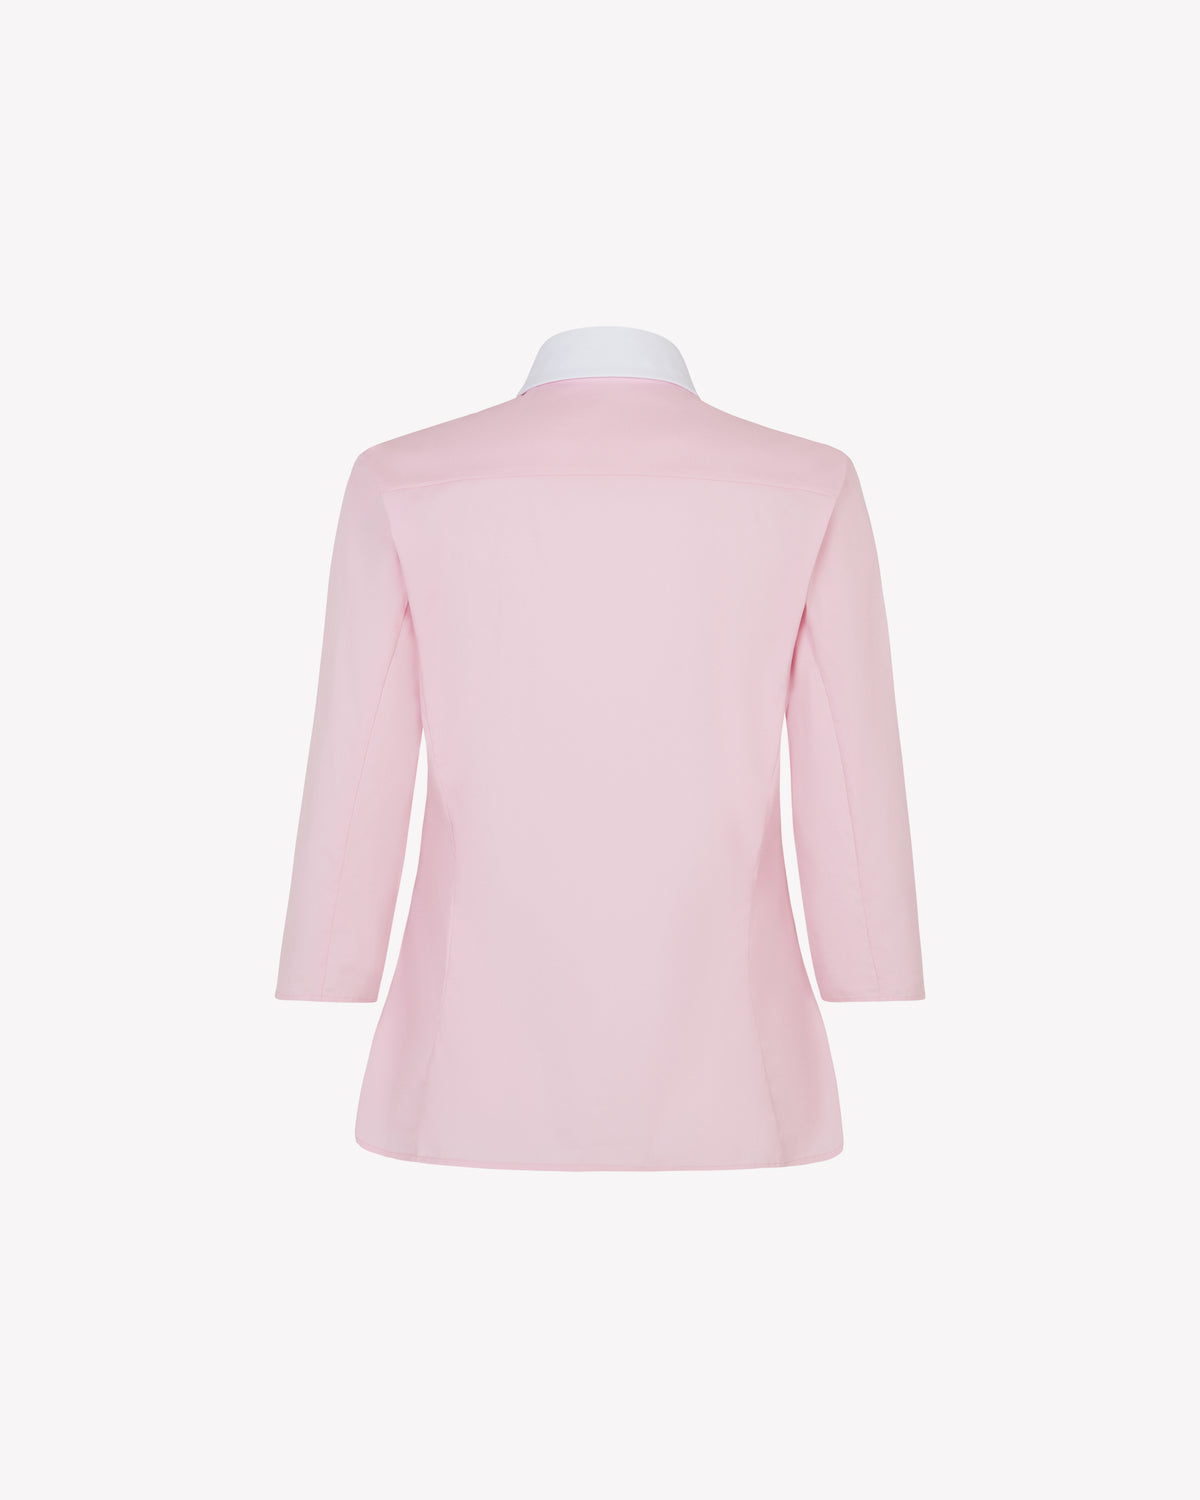 Capri Shirt - Rose Pink